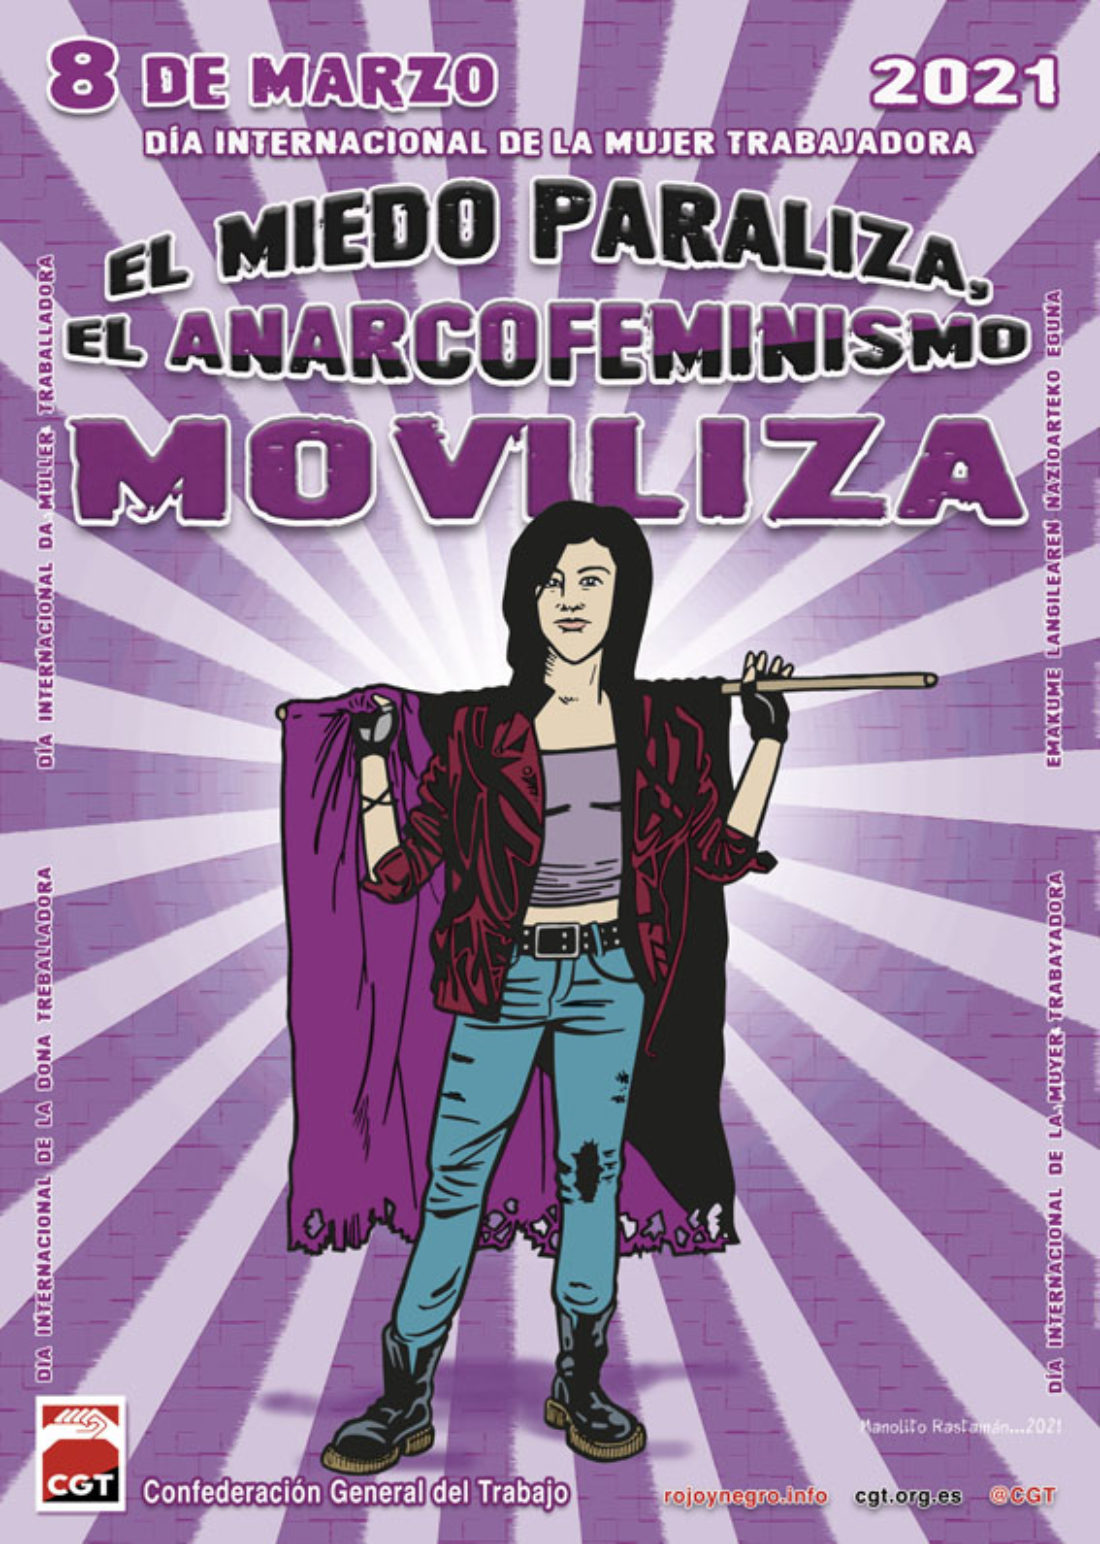 8 de Marzo de 2021 ¡El miedo paraliza, el anarcofeminismo moviliza!